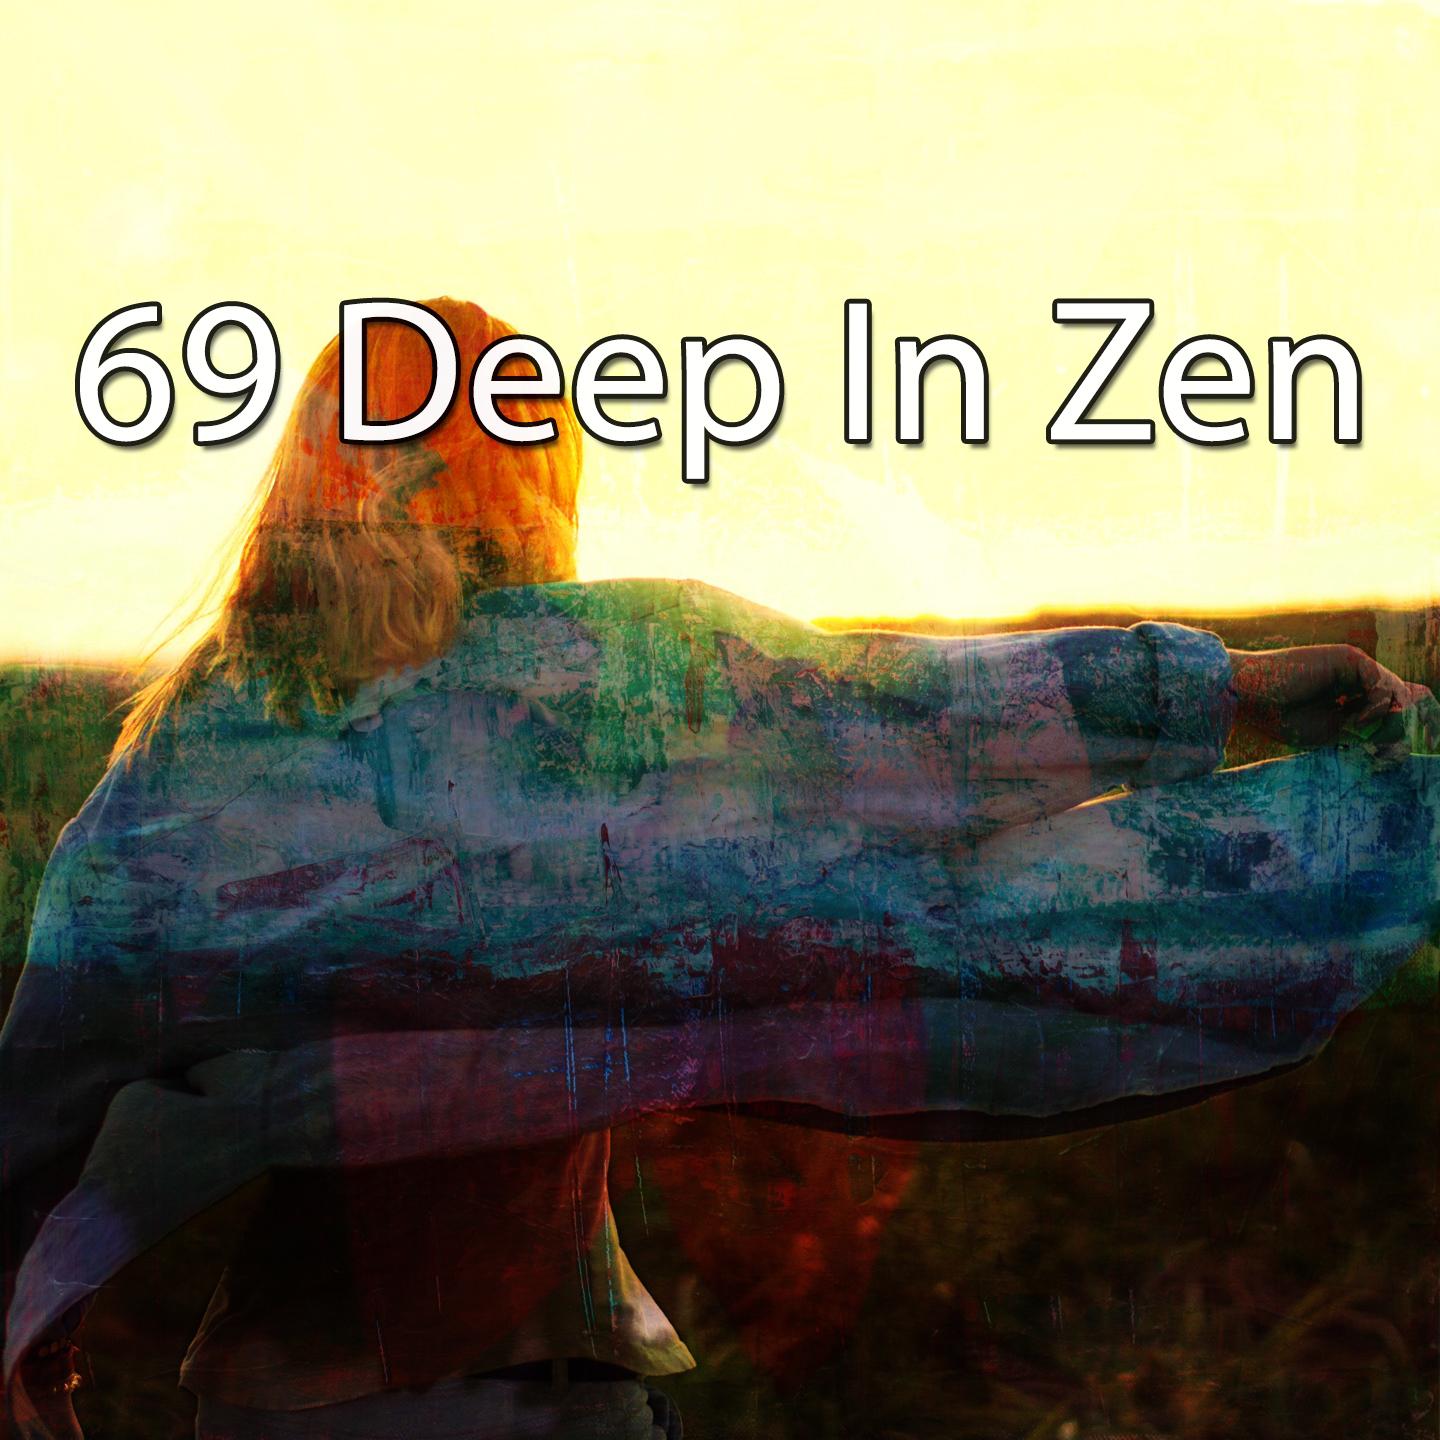 69 Deep in Zen